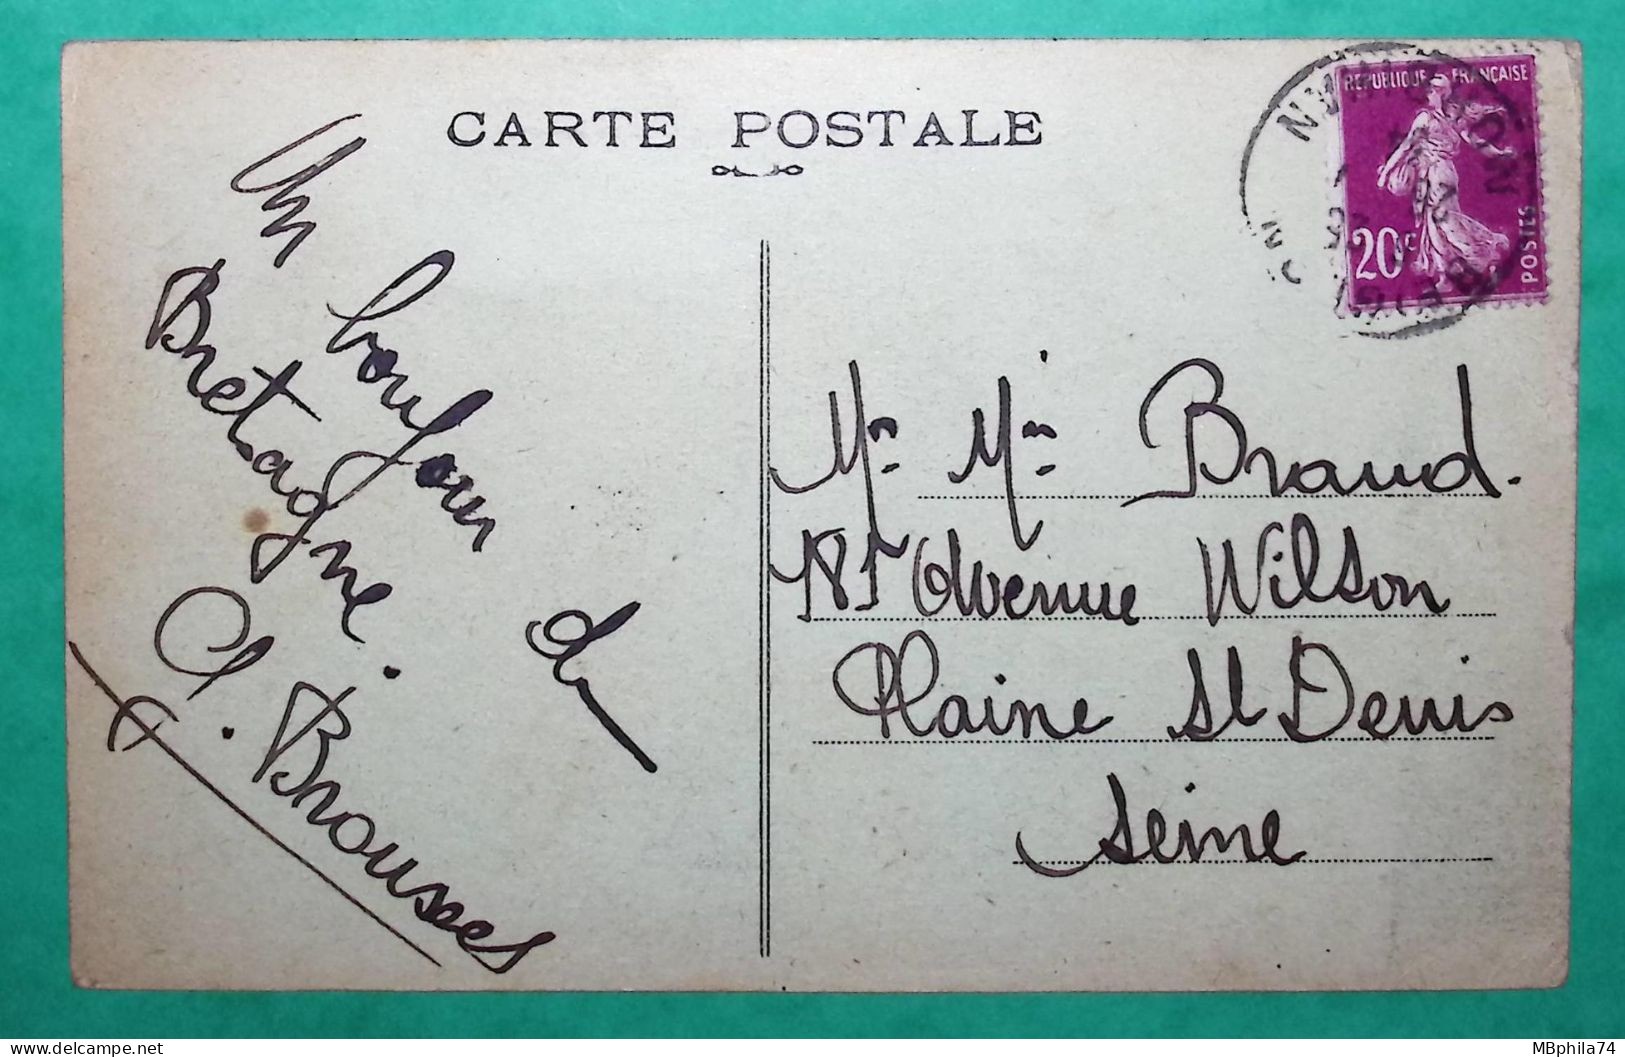 CARTE POSTALE BEIGNON MORBIHAN LE CALVAIRE ET LA POSTE POUR LA PLAINE ST DENIS SEINE 1934 POST CARD FRANCE - Postal Services